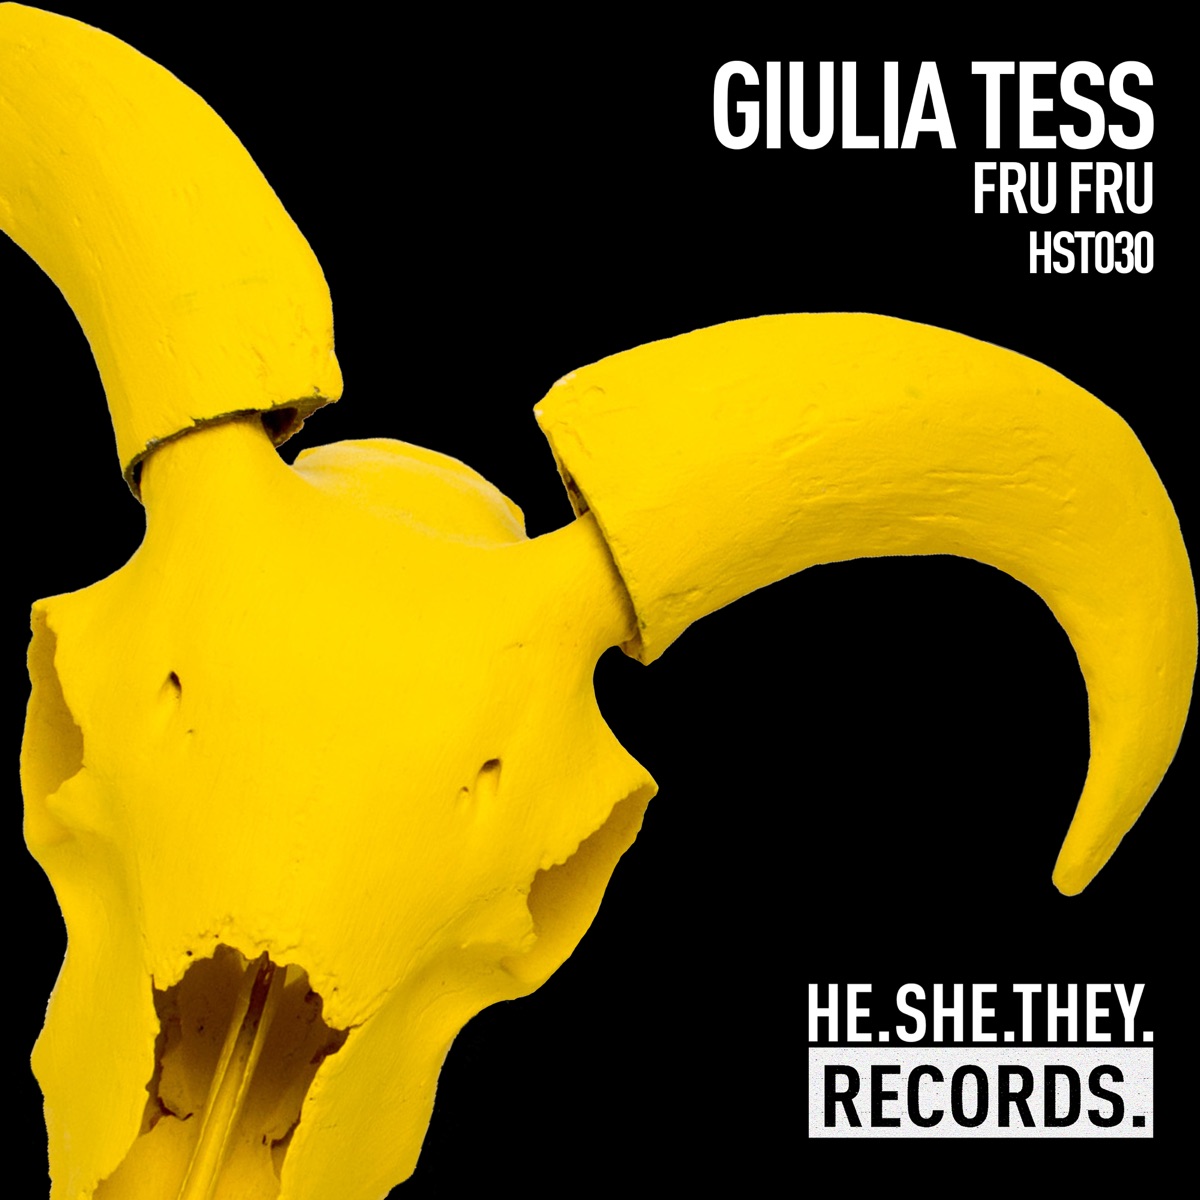 Giulia Tess — Fru Fru cover artwork